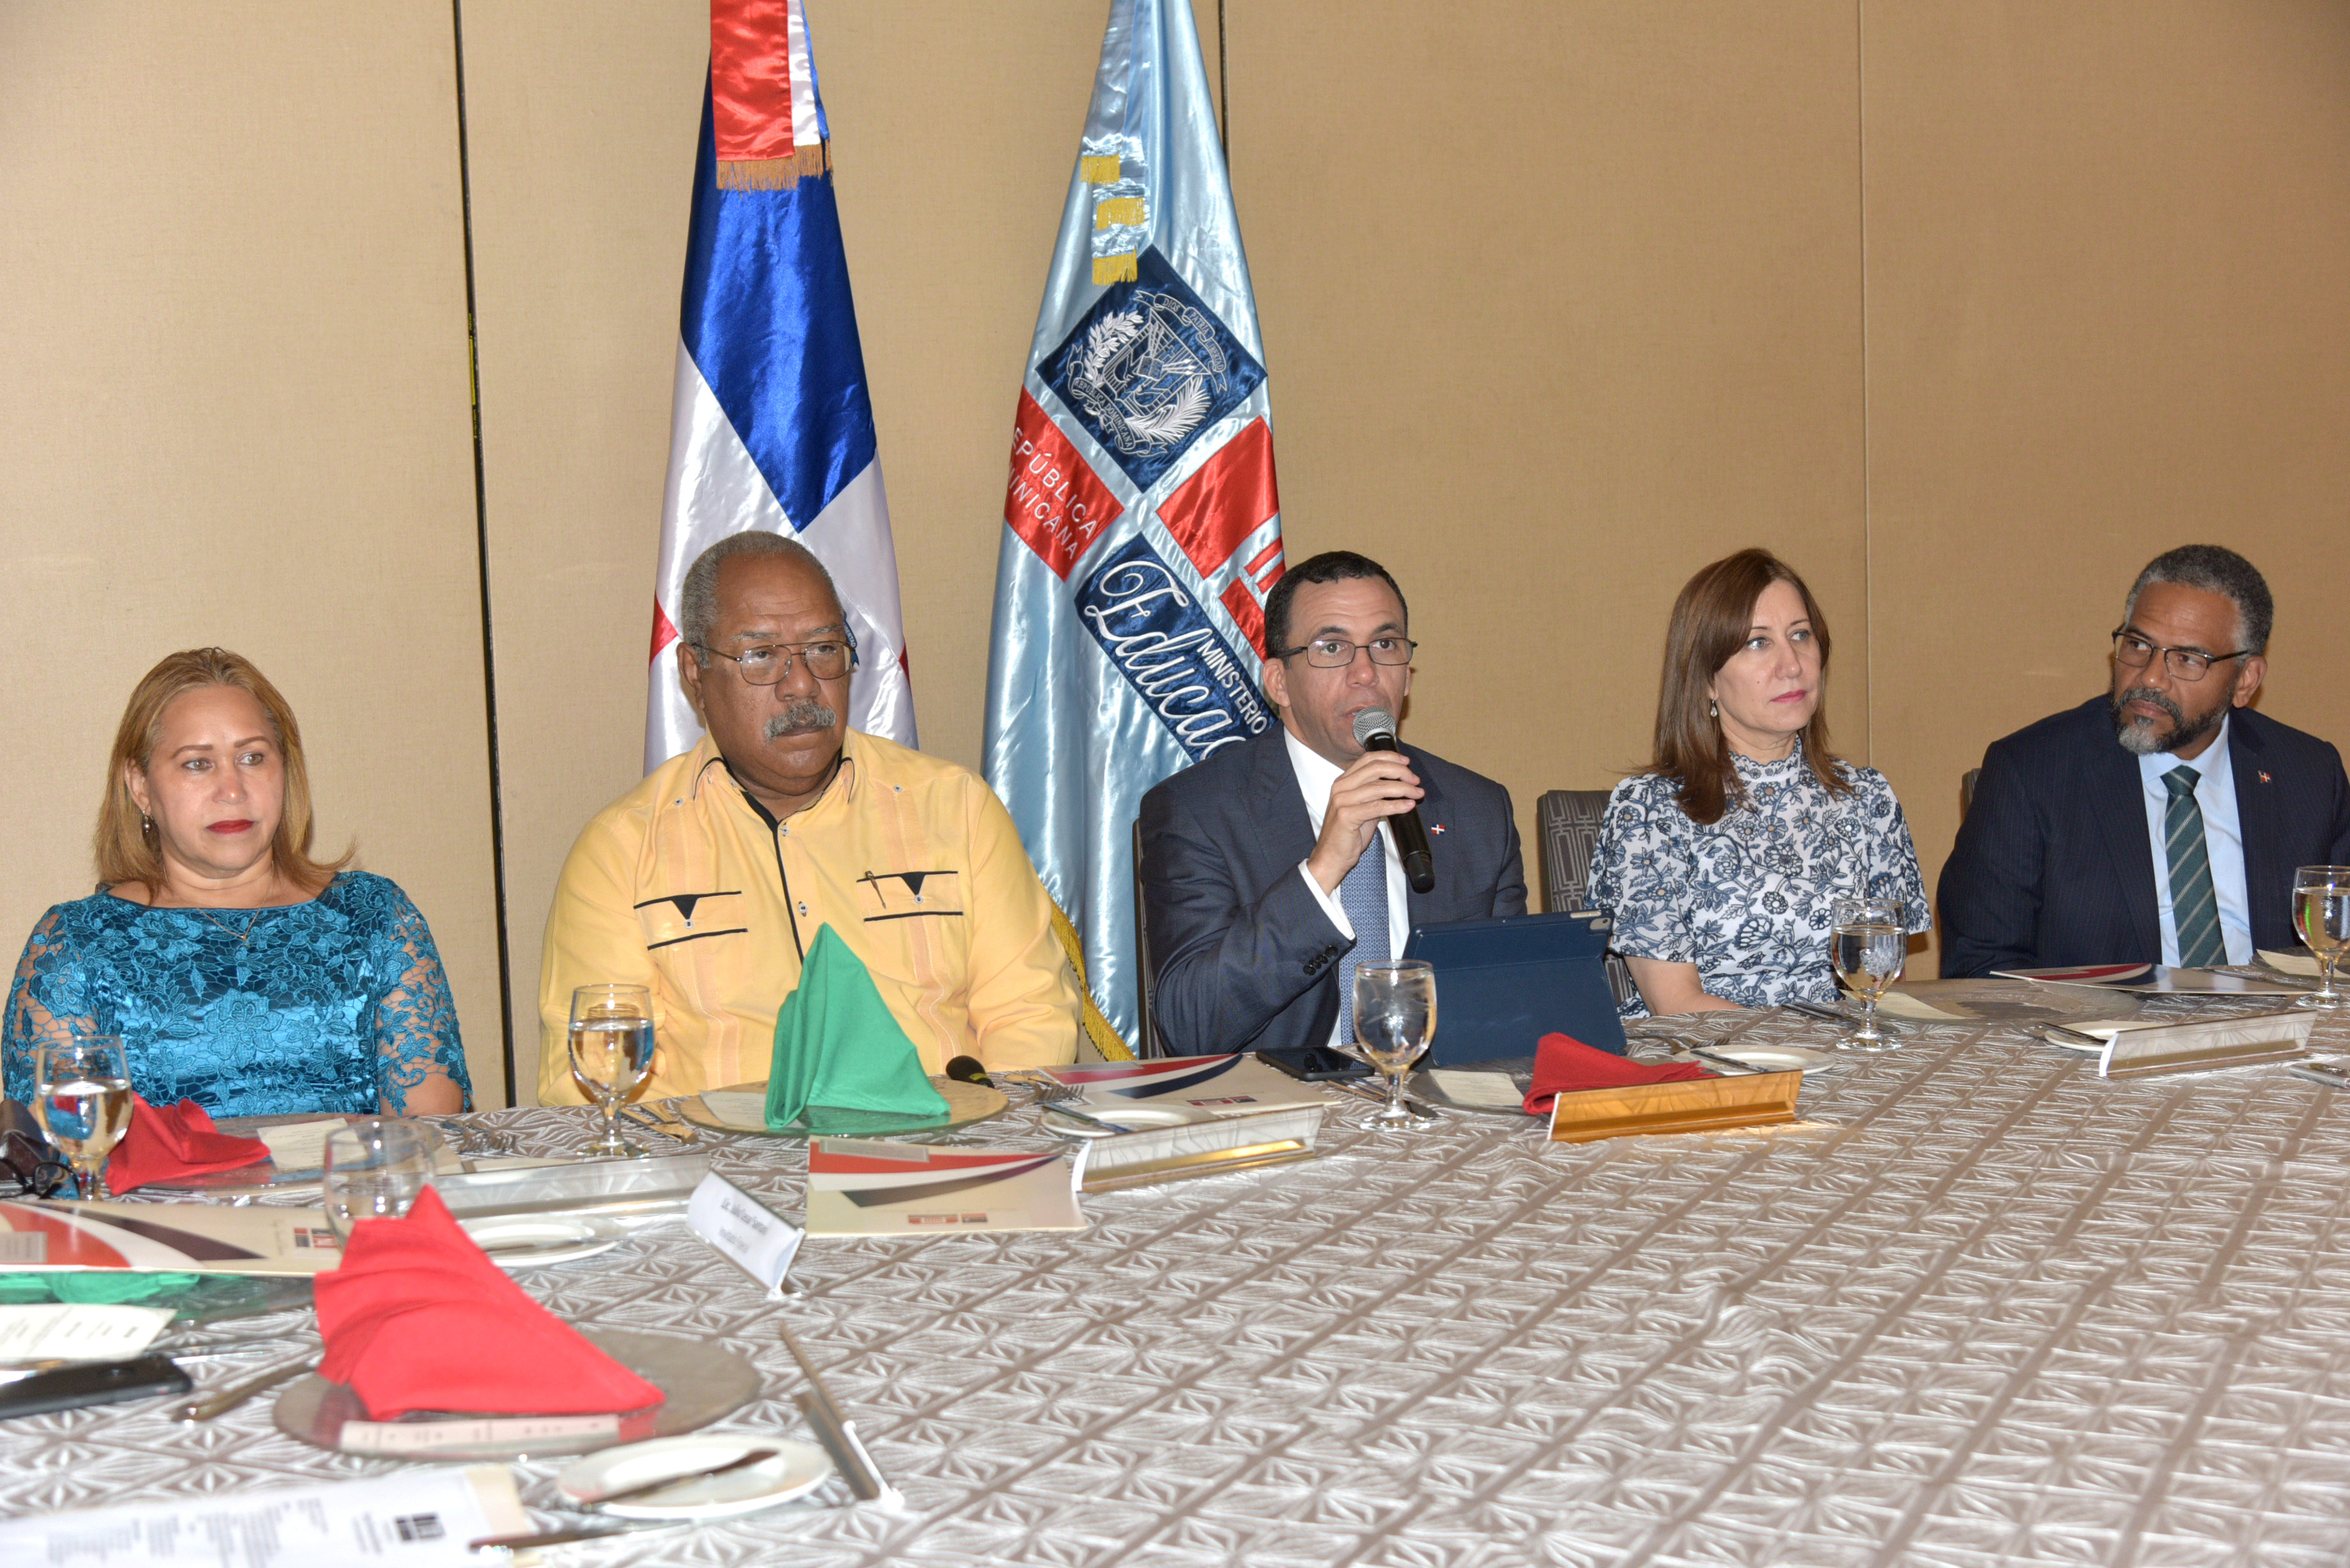  imagen Ministro Andrés Navarro sentado junto al Consejo Nacional de Educación presentando resultados de la Evaluación Docente  